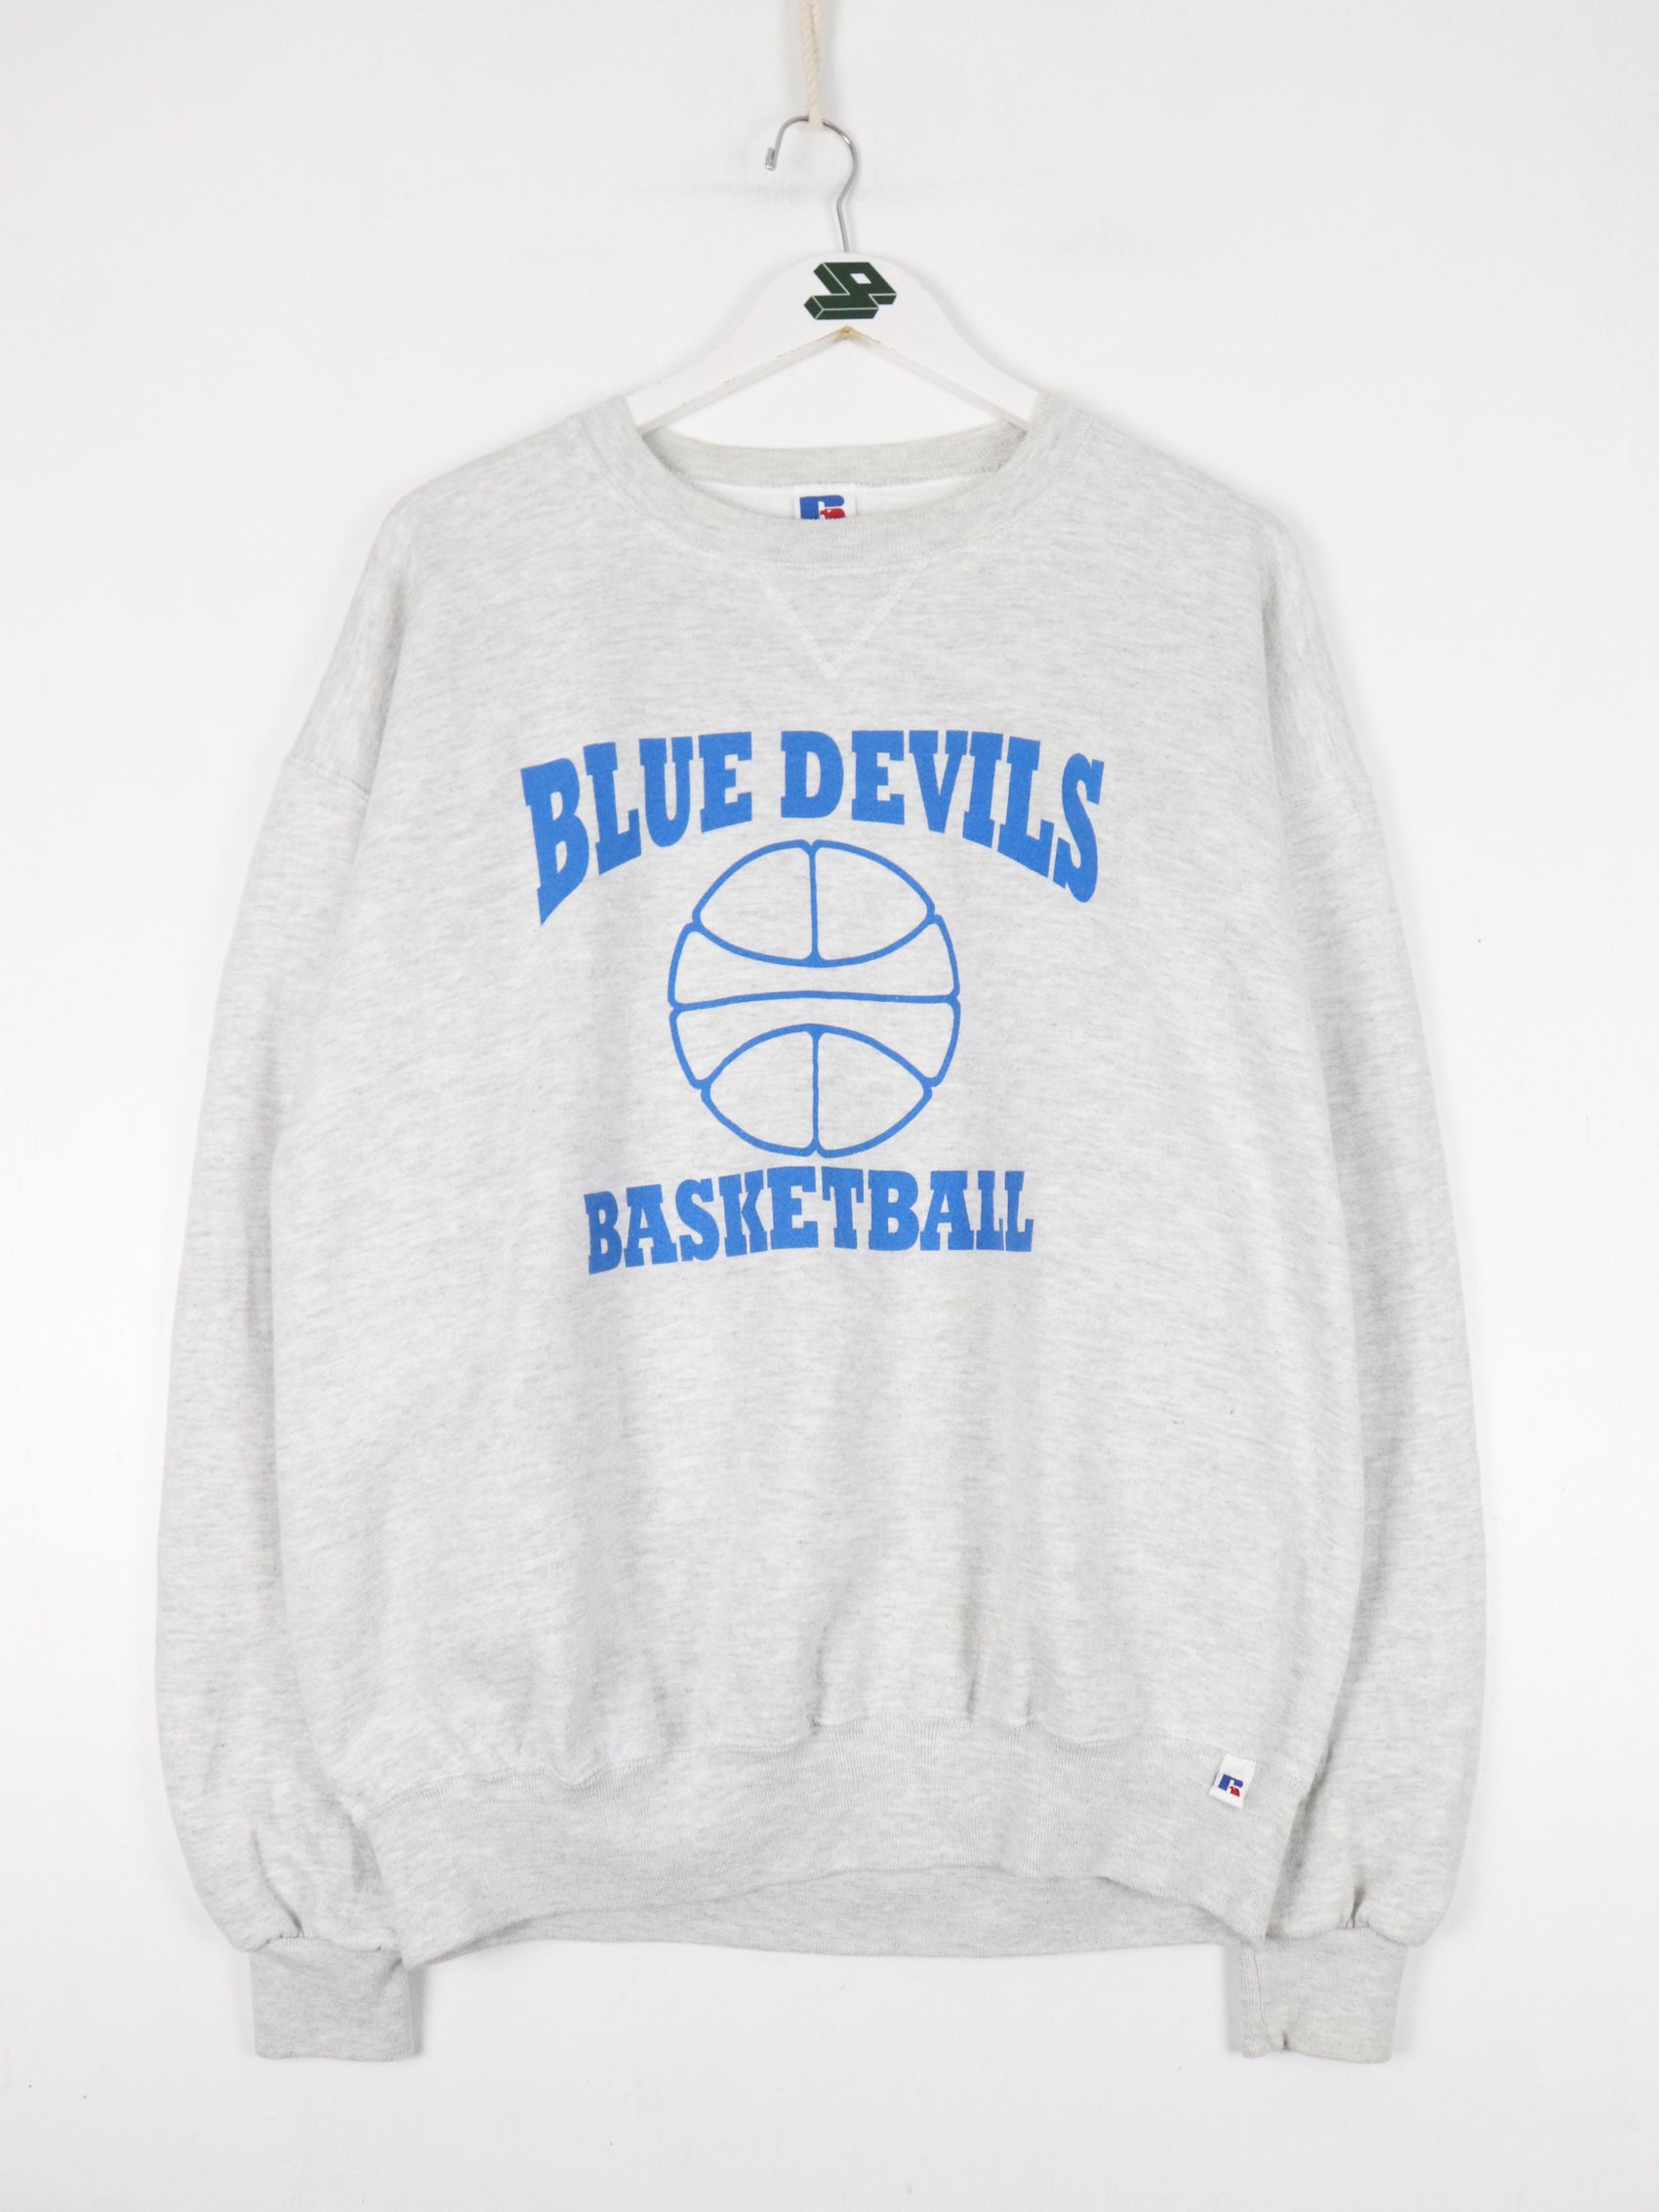 Vintage Duke Blue Devils Sweatshirt Fits Mens Large Grey College Basketball